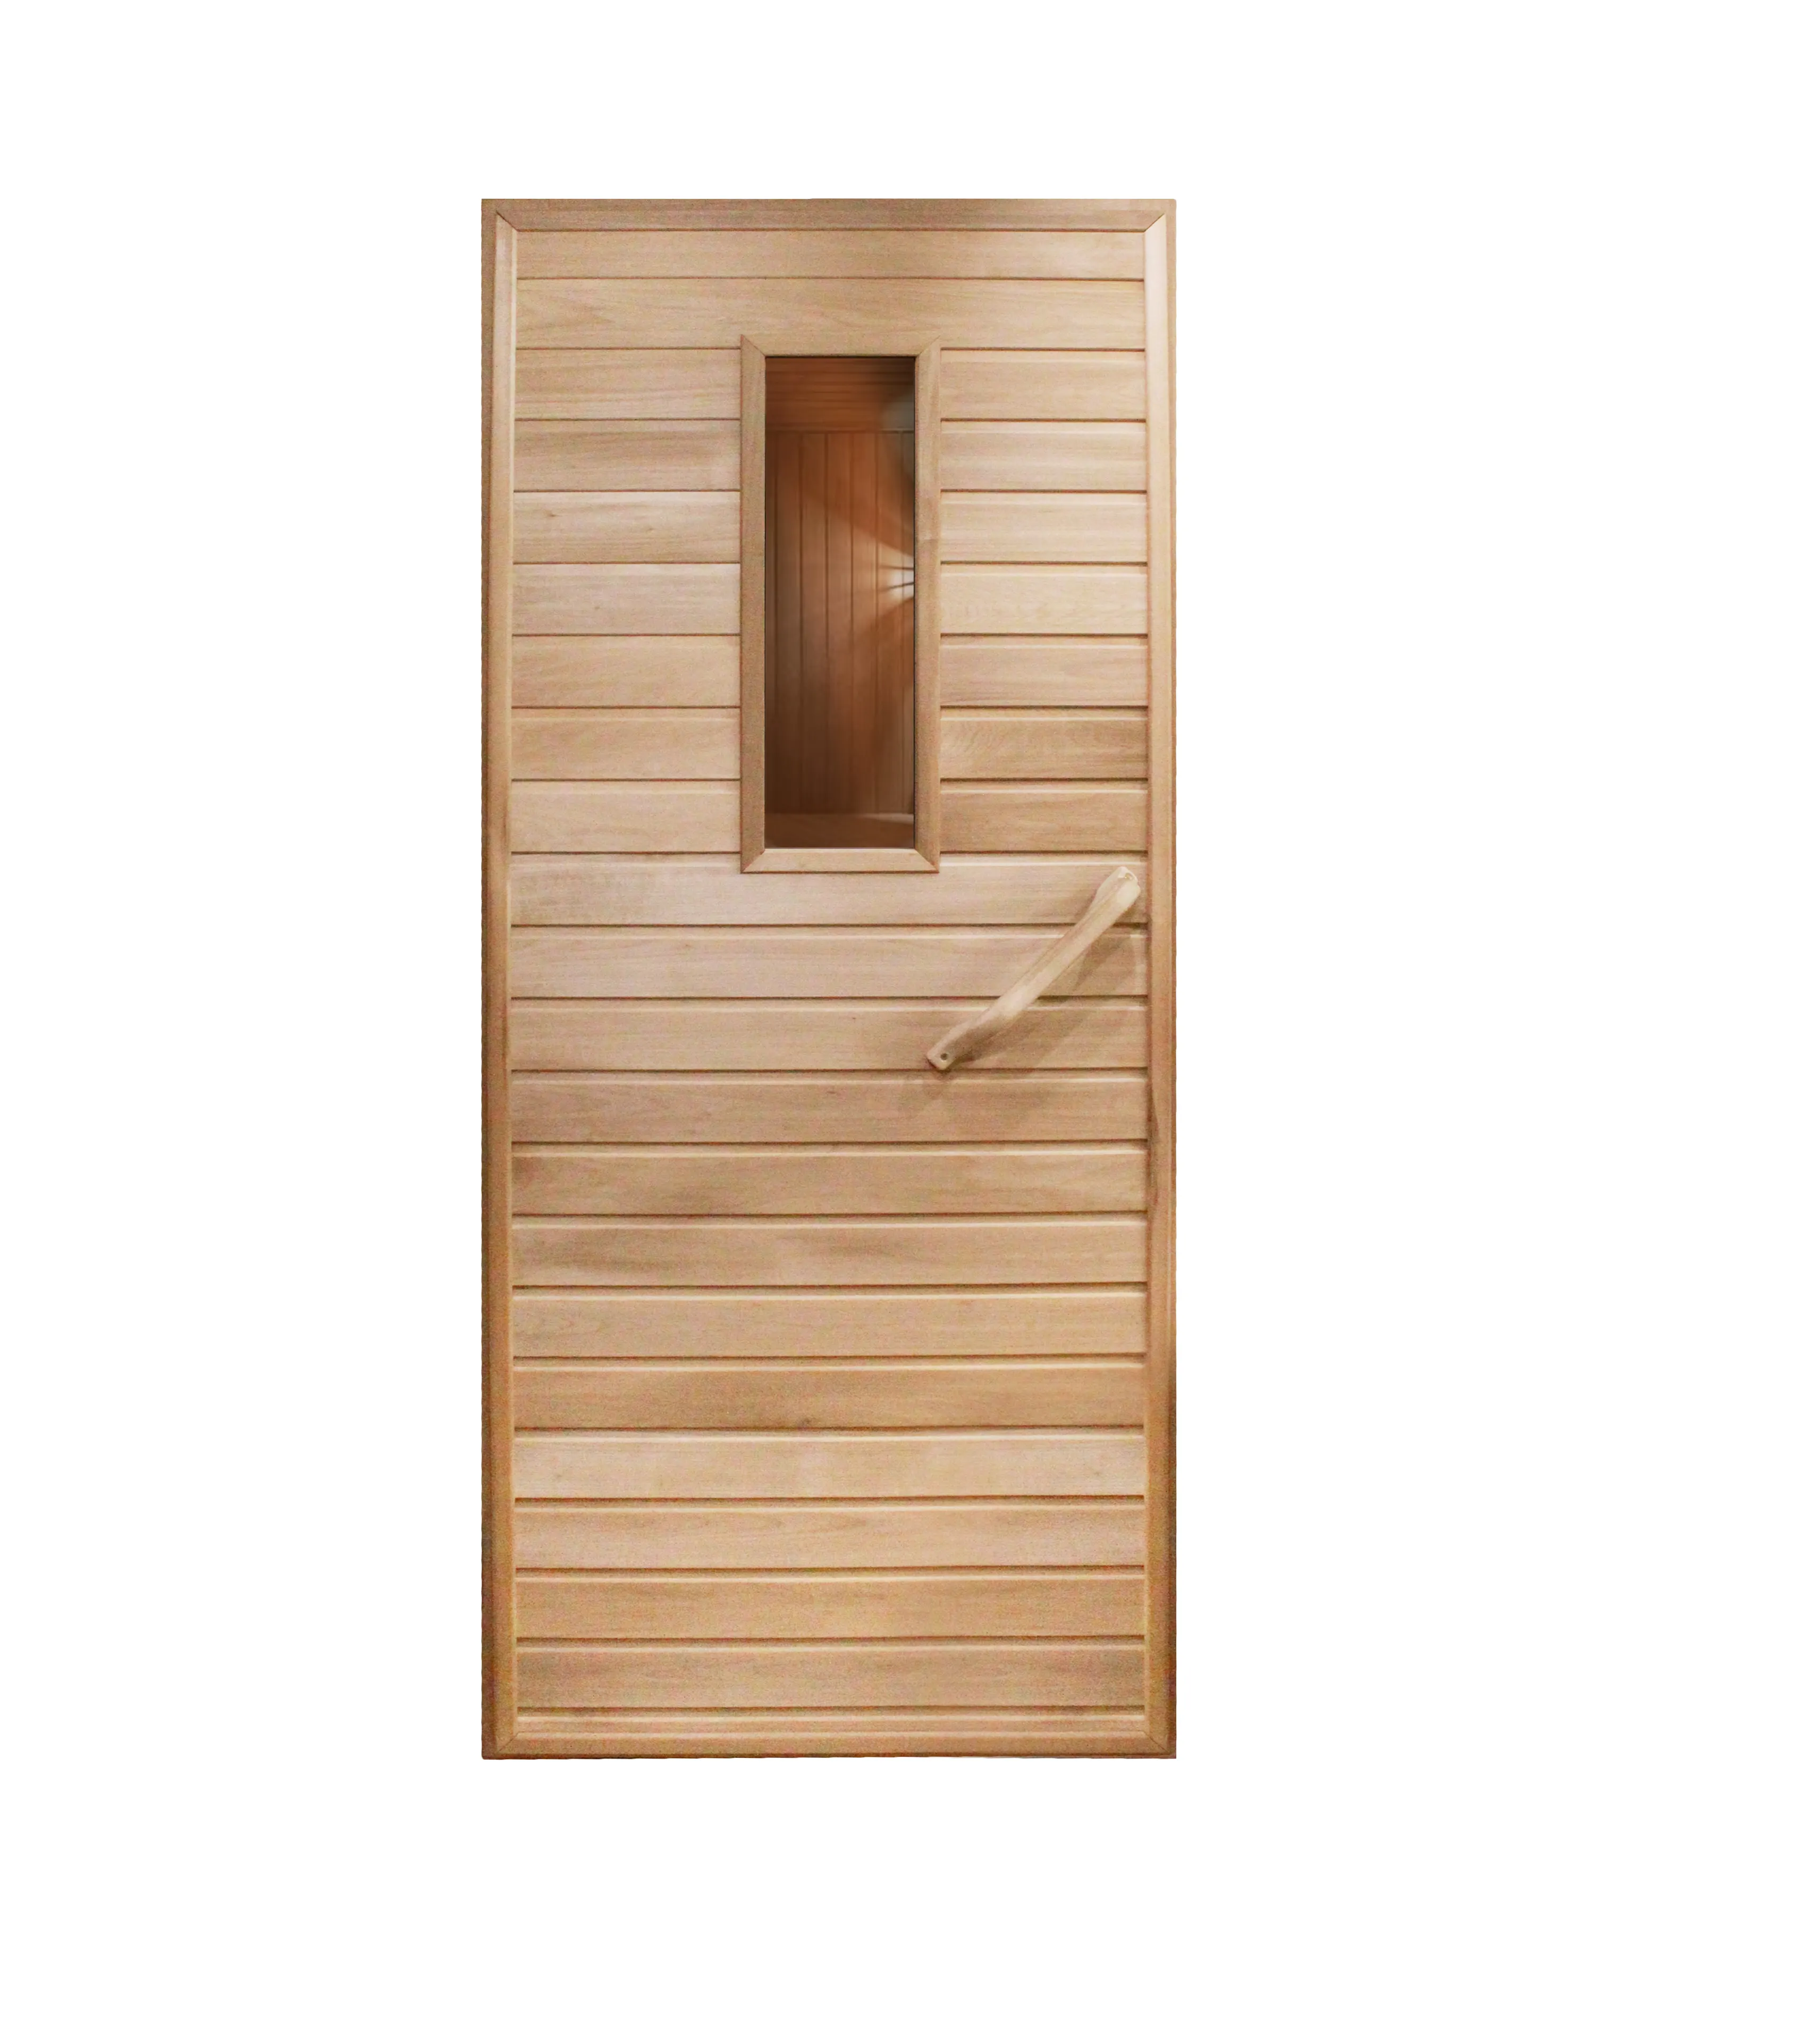 浴室またはサウナ用のサーモウッド製の卸売業者木製ドア家庭用の高品質の室内ドア